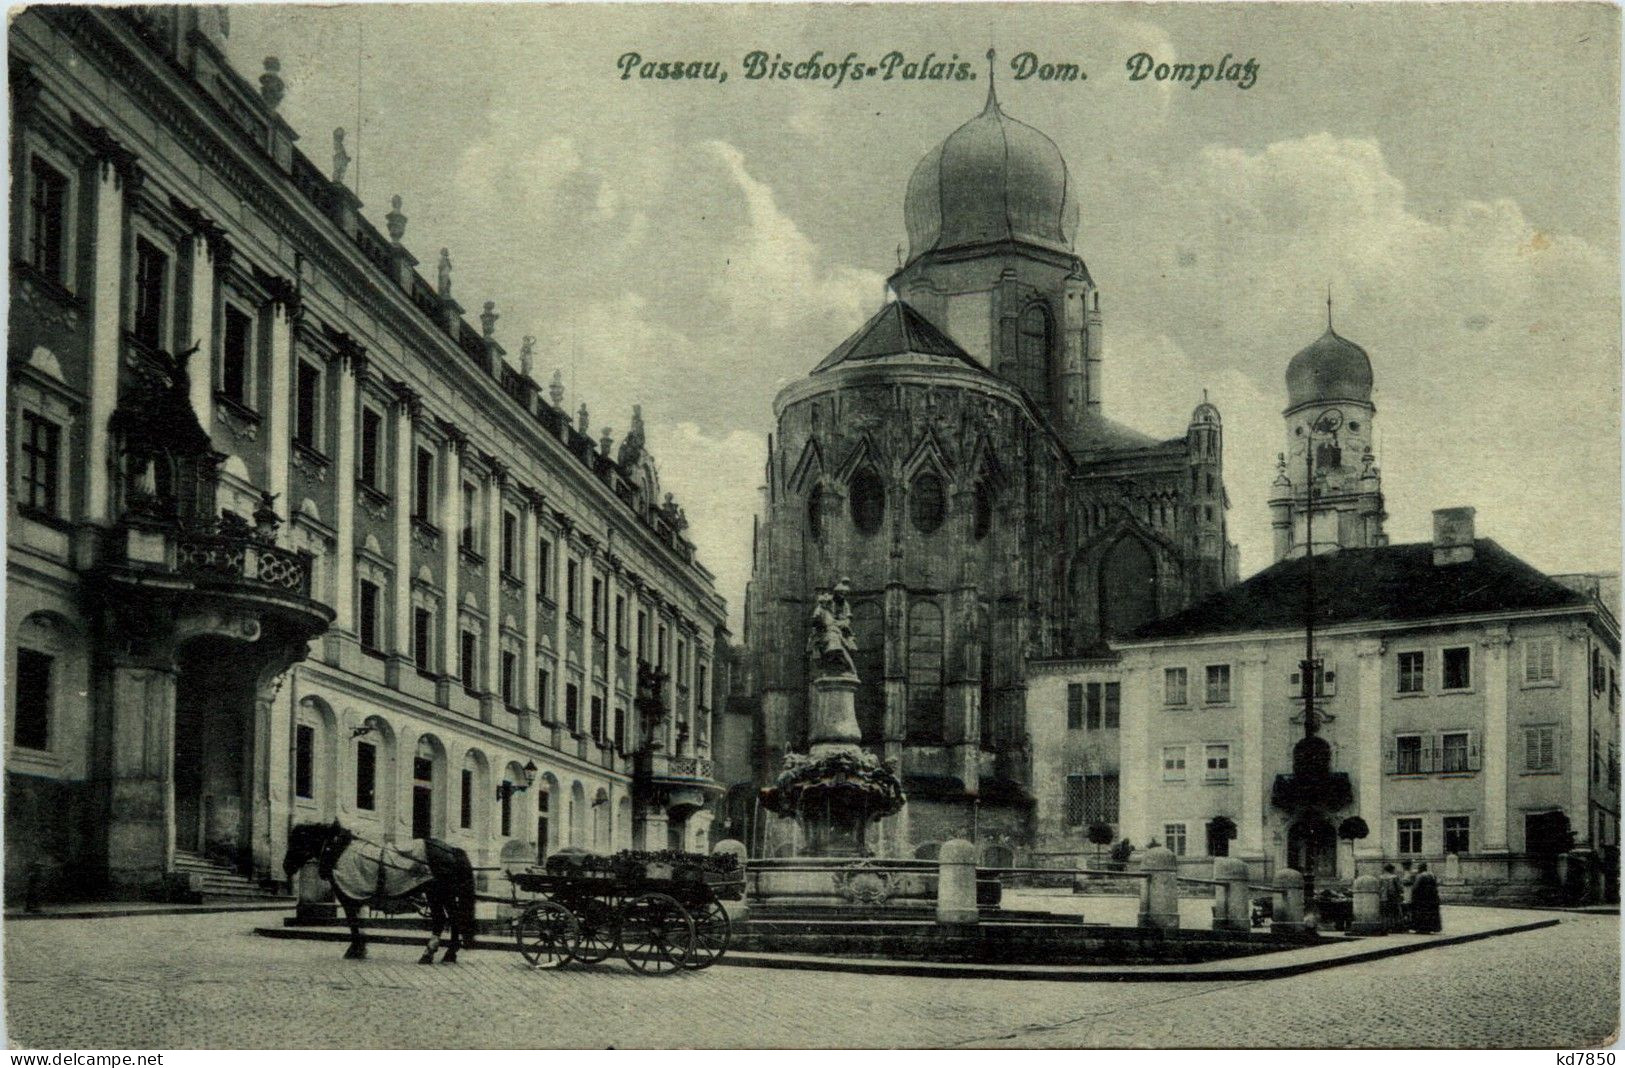 Passau/Bayern - Passau, Bischofs-Palais, Dom, Domplatz - Passau